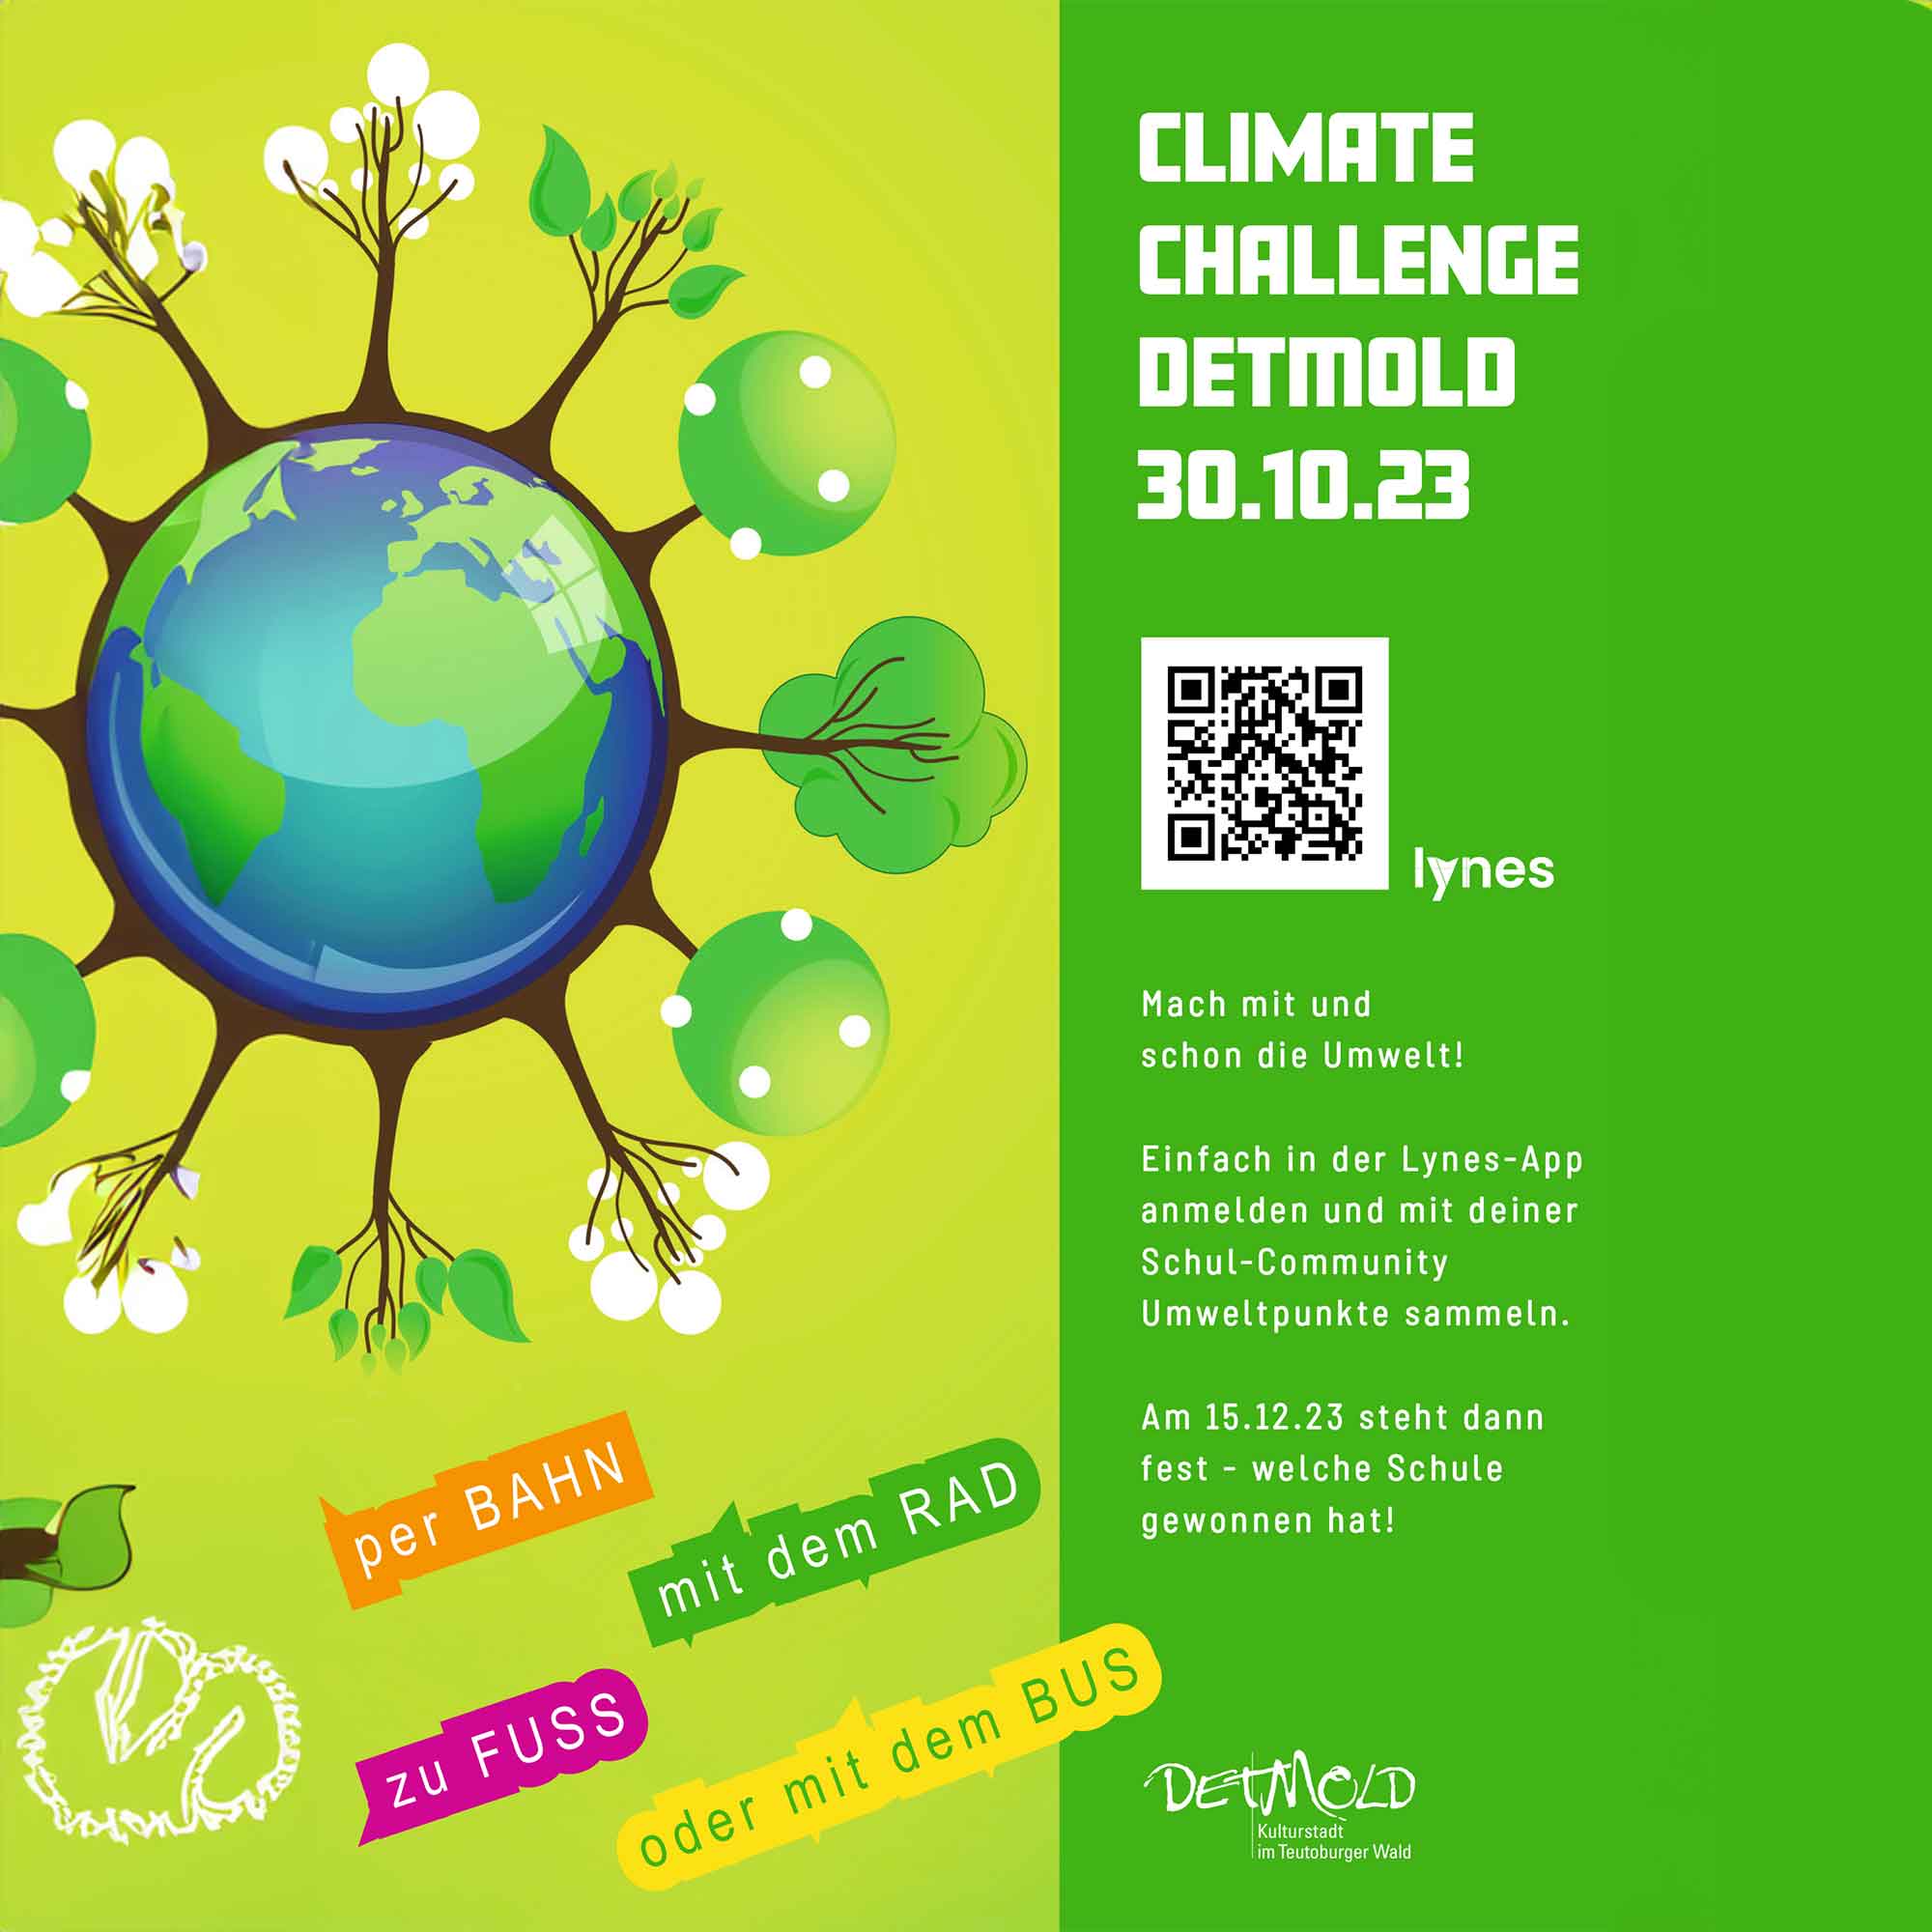 Detmold: Bürgermeister ruft Schüler zum Klimawettbewerb auf, 30. Oktober bis 15. Dezember 2023